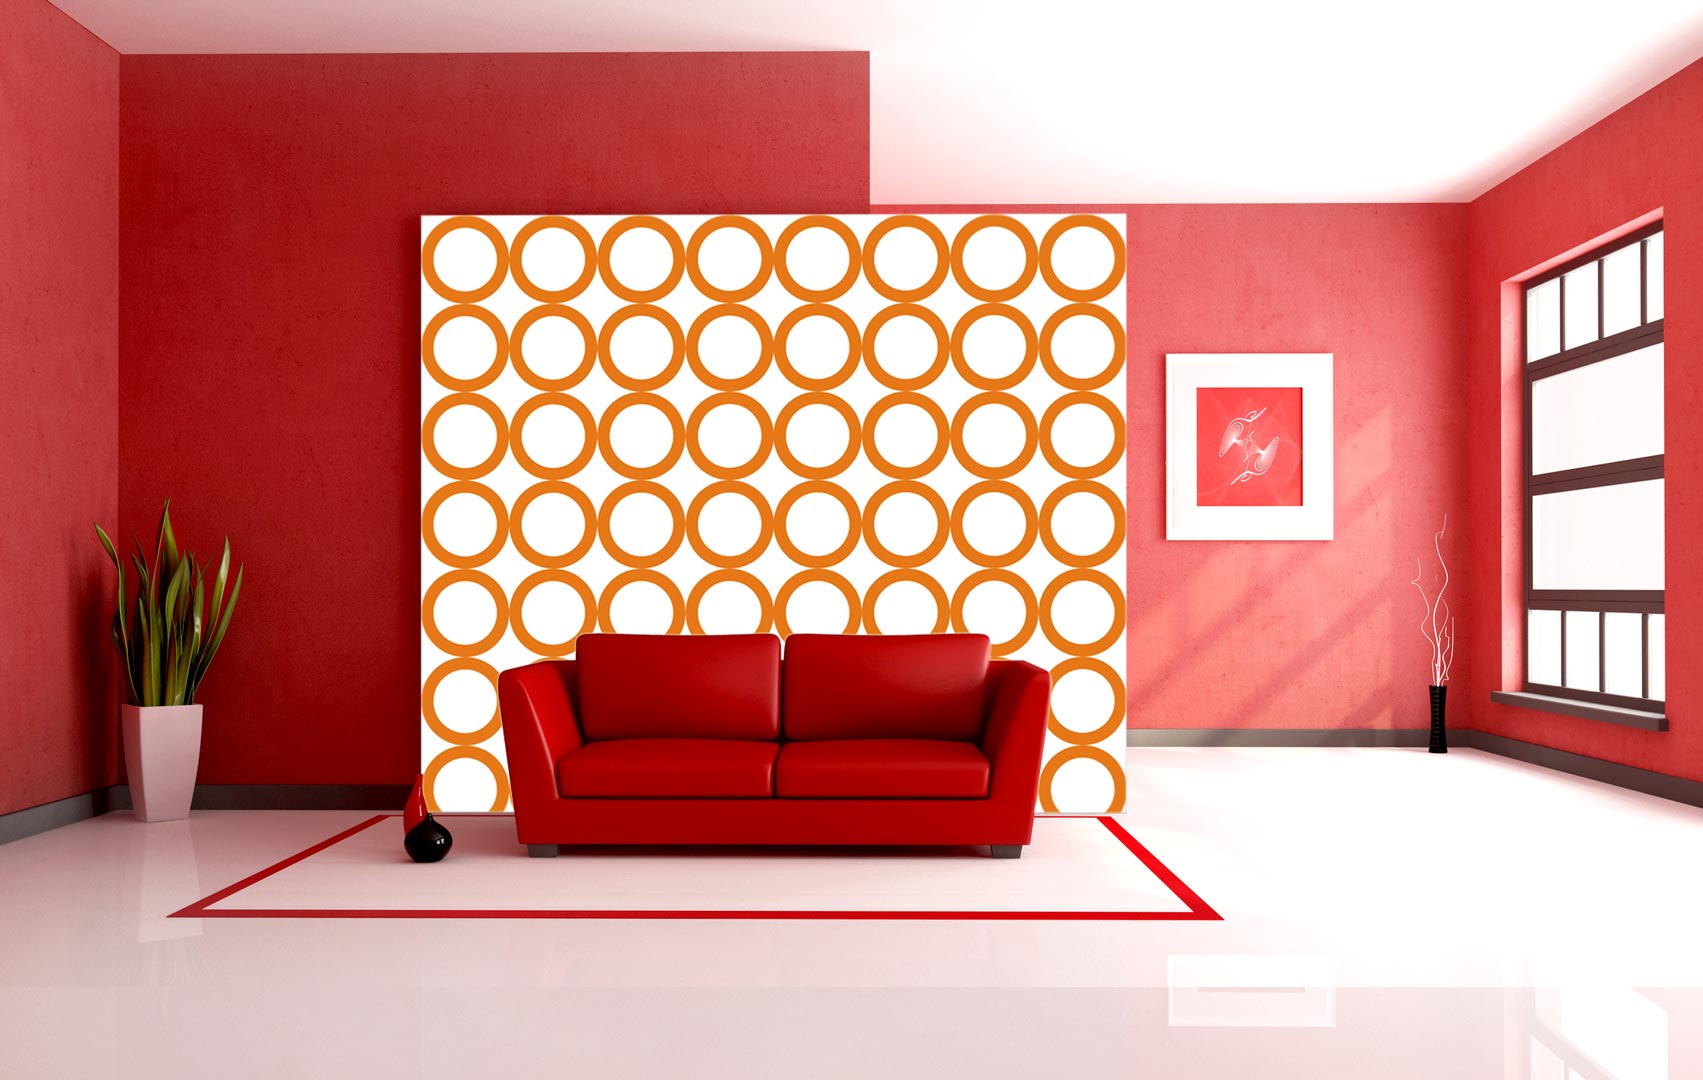 Bílá tapeta s oranžovými kružnicemi, prstenci, kruhy, kolečky - Dekoori obrázek 4